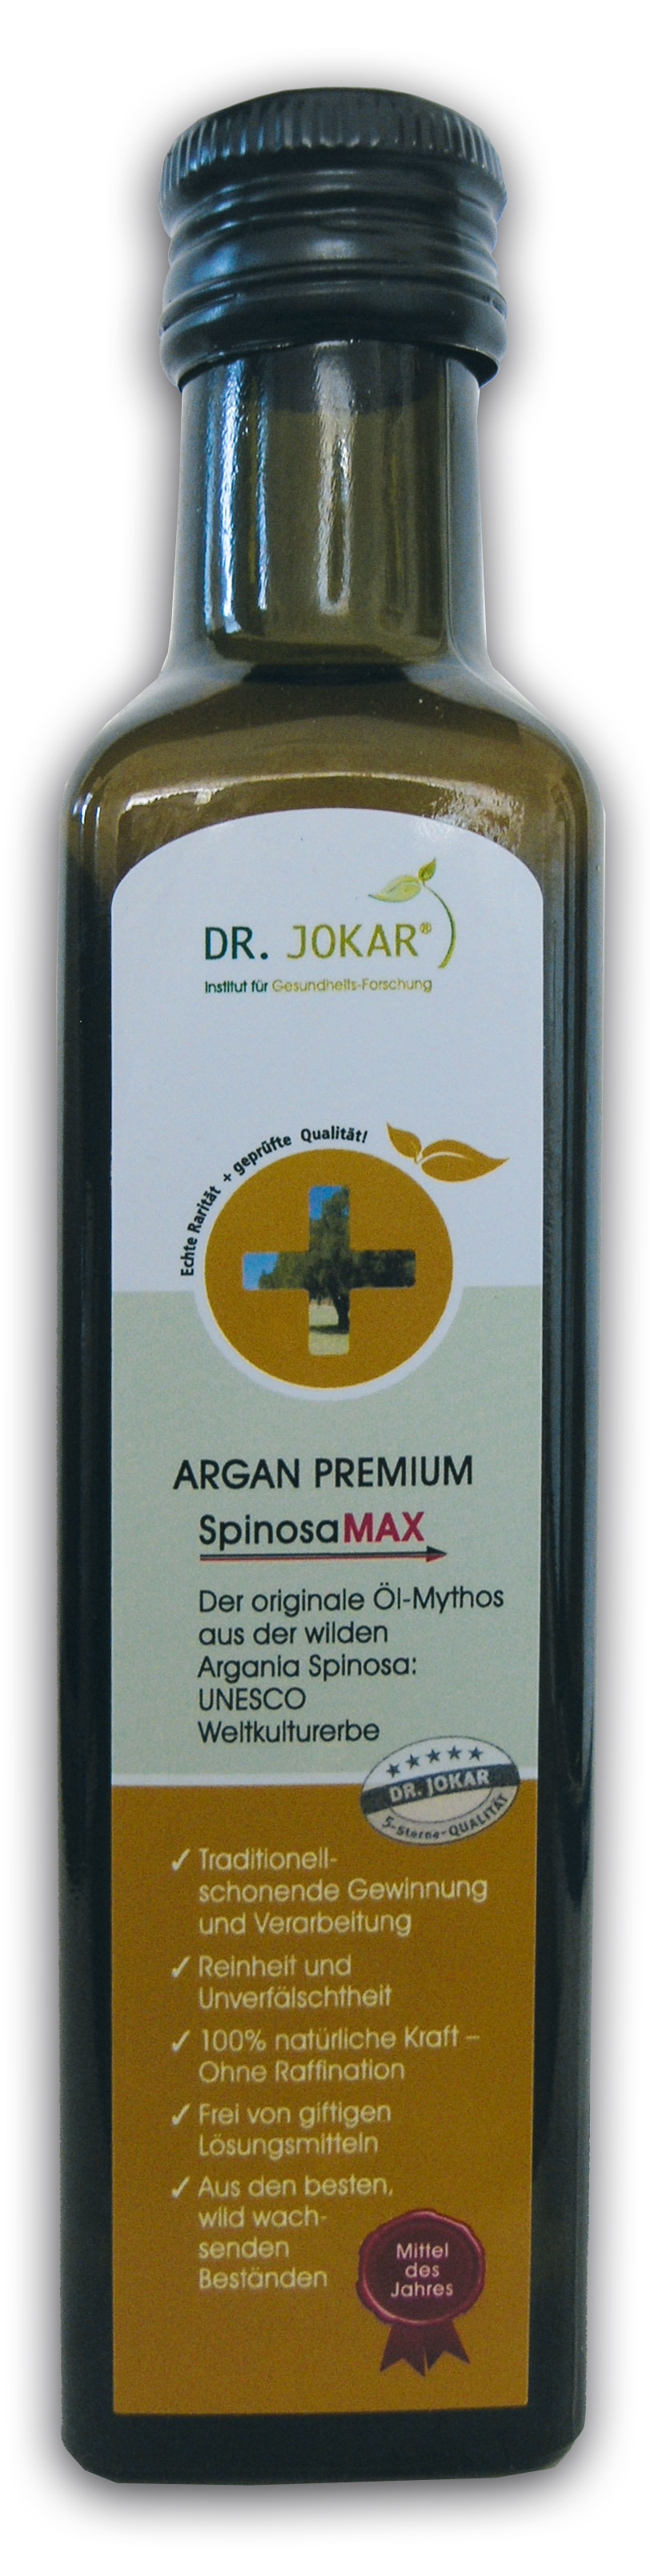 Argan Premium